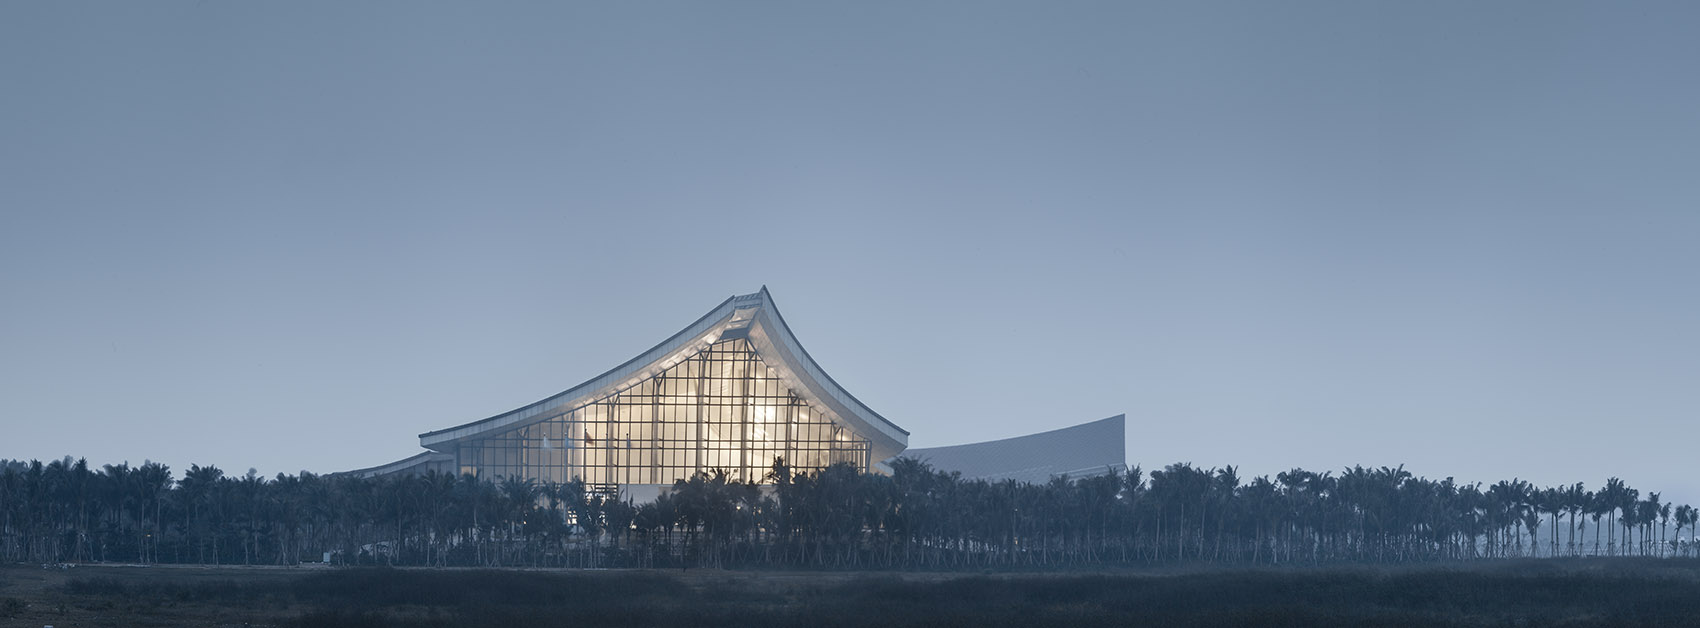 Architectural exterior design of Nanhai Museum